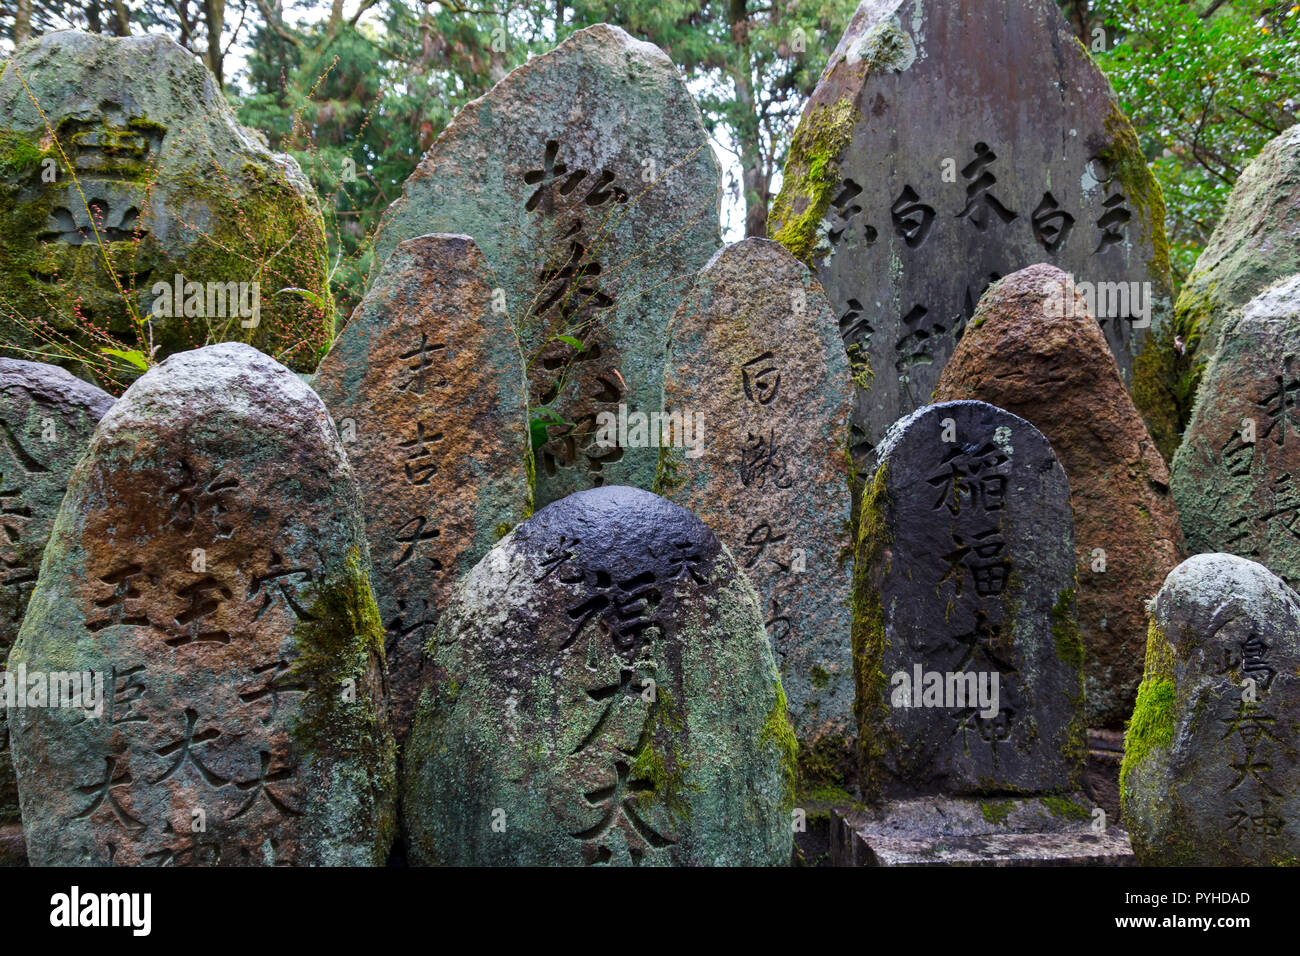 Texte japonais kanji' du 'sculptés dans des pierres à Kyoto, Japon Banque D'Images